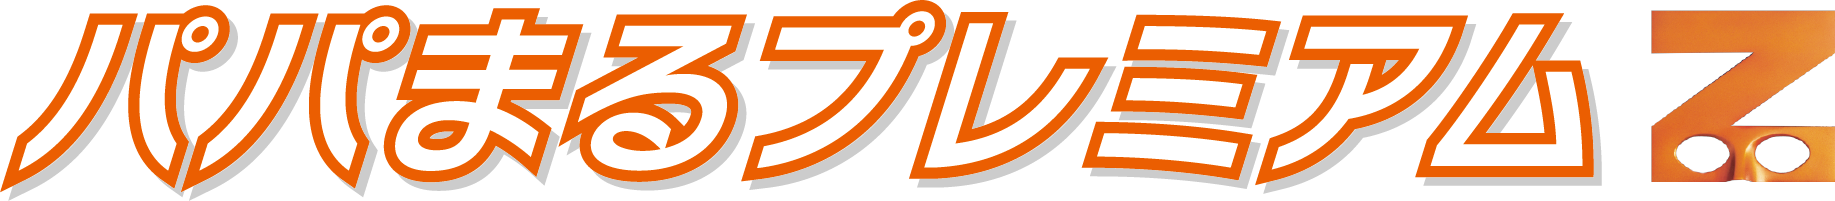 プレミアムZ_logo2_ol